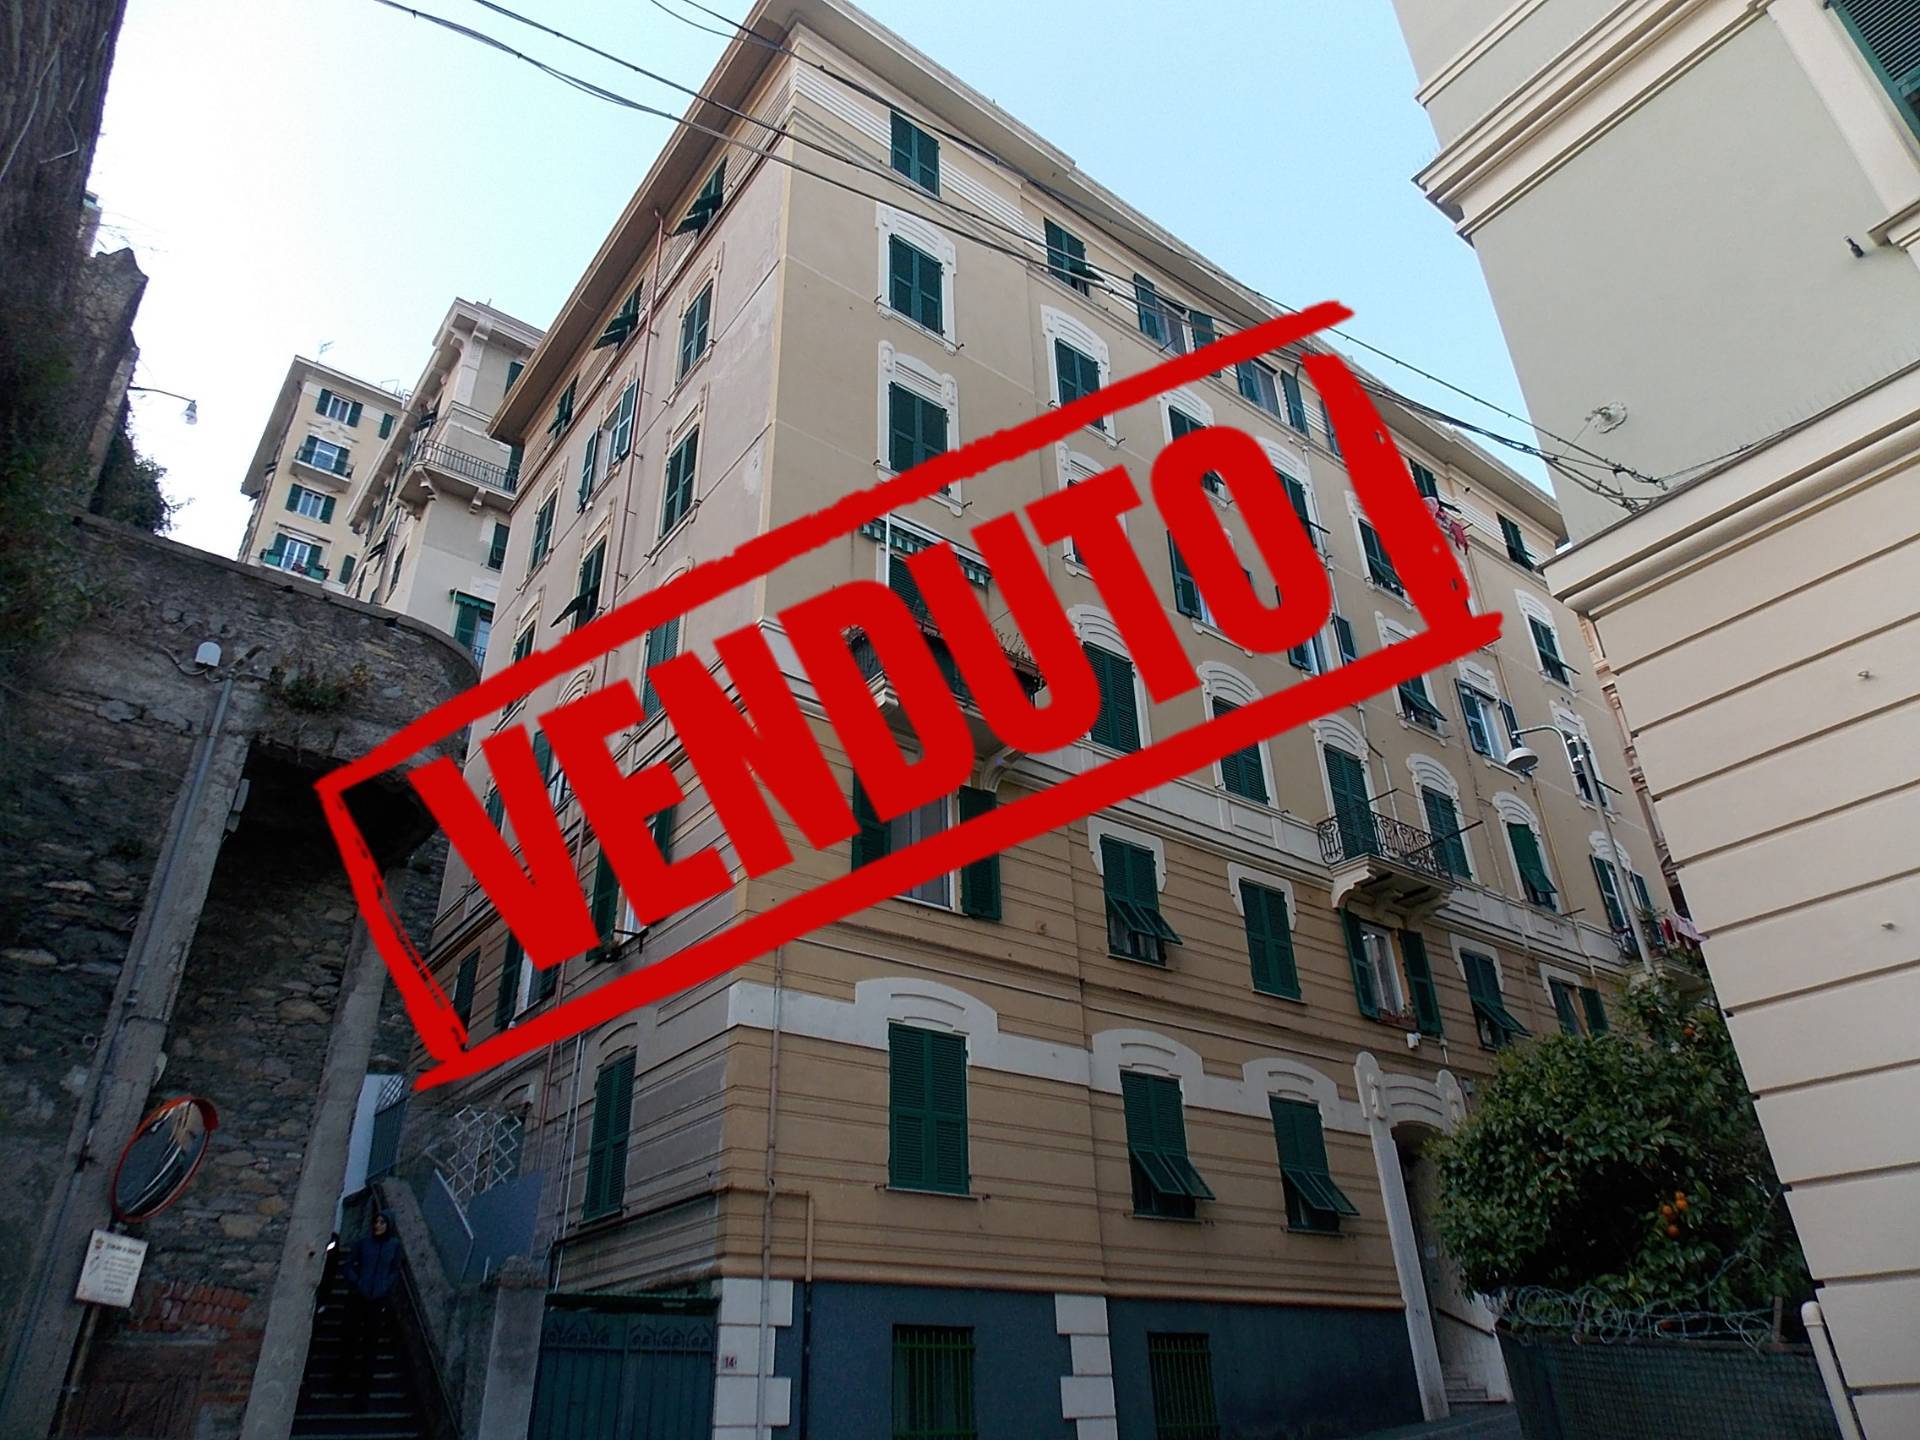 Appartamento da ristrutturare, Genova principe